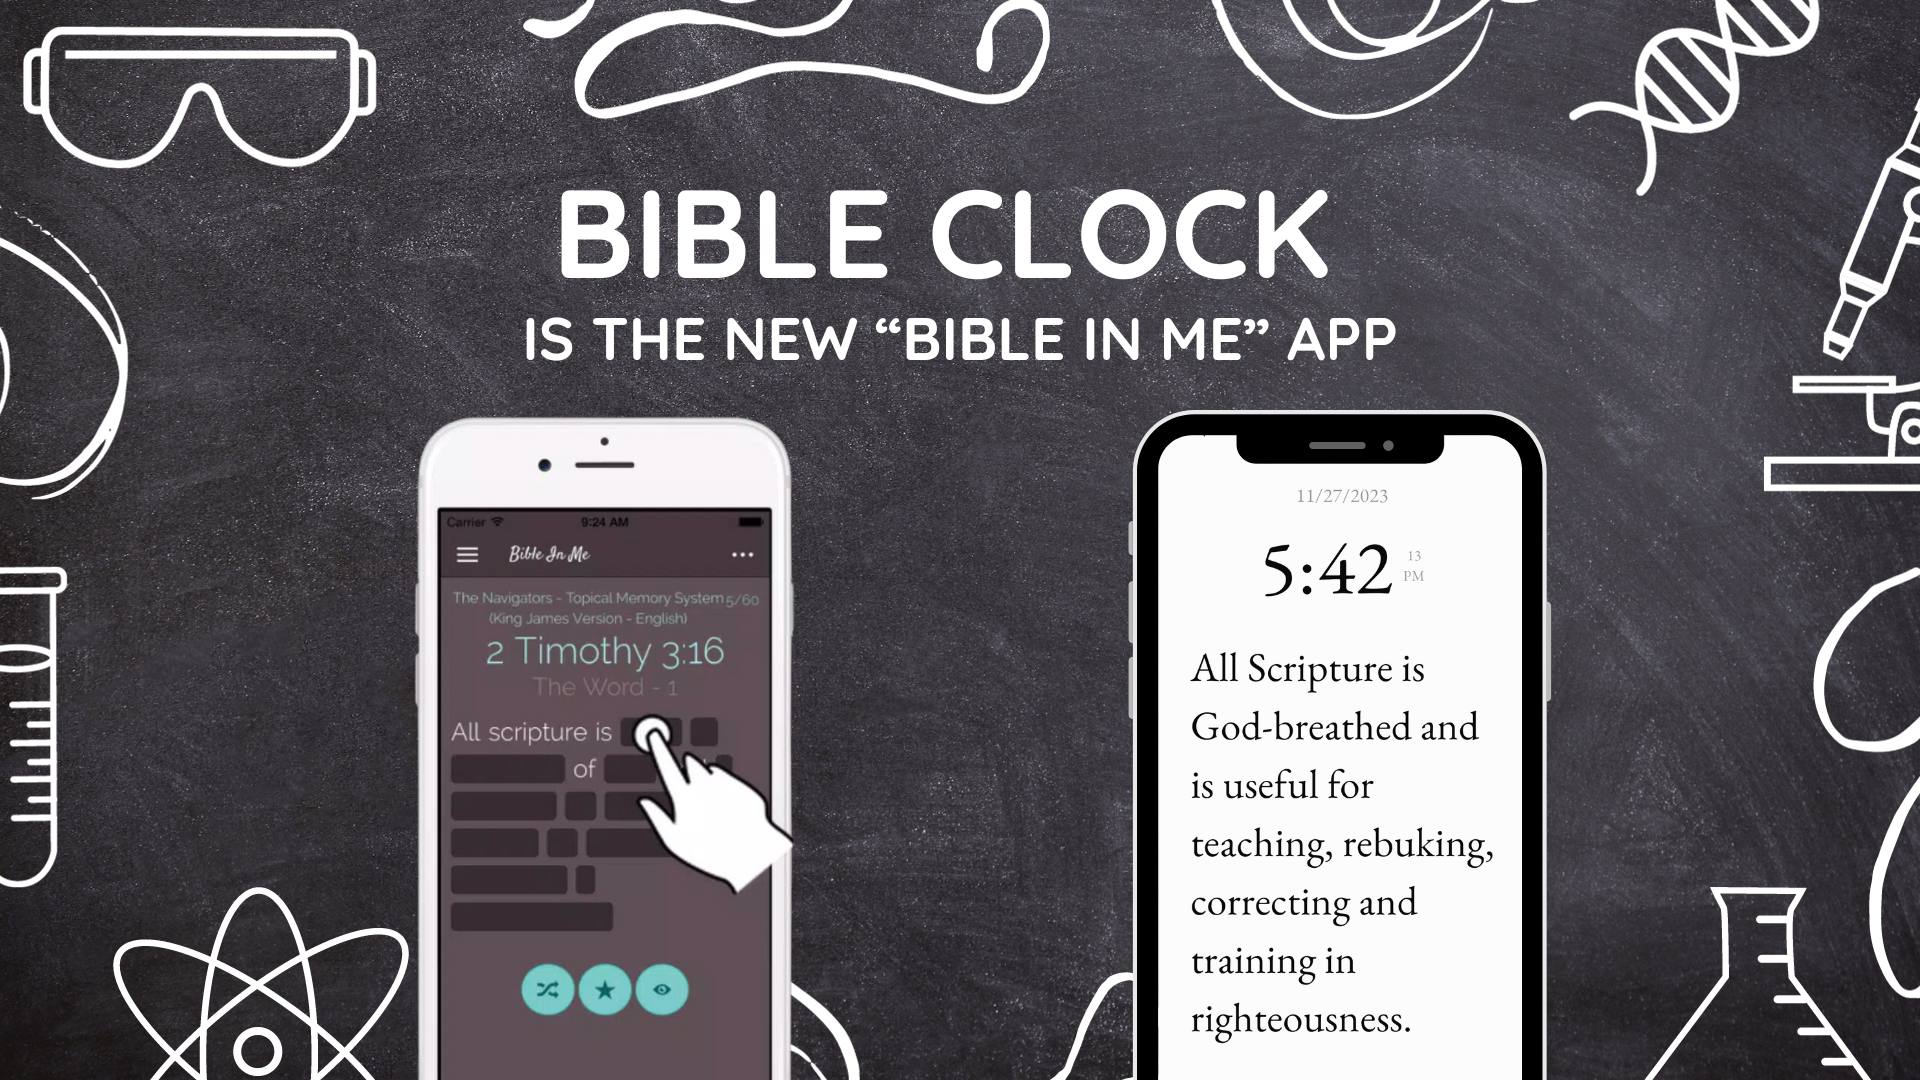 "Bible Clock" app is the new "Bible In Me" app